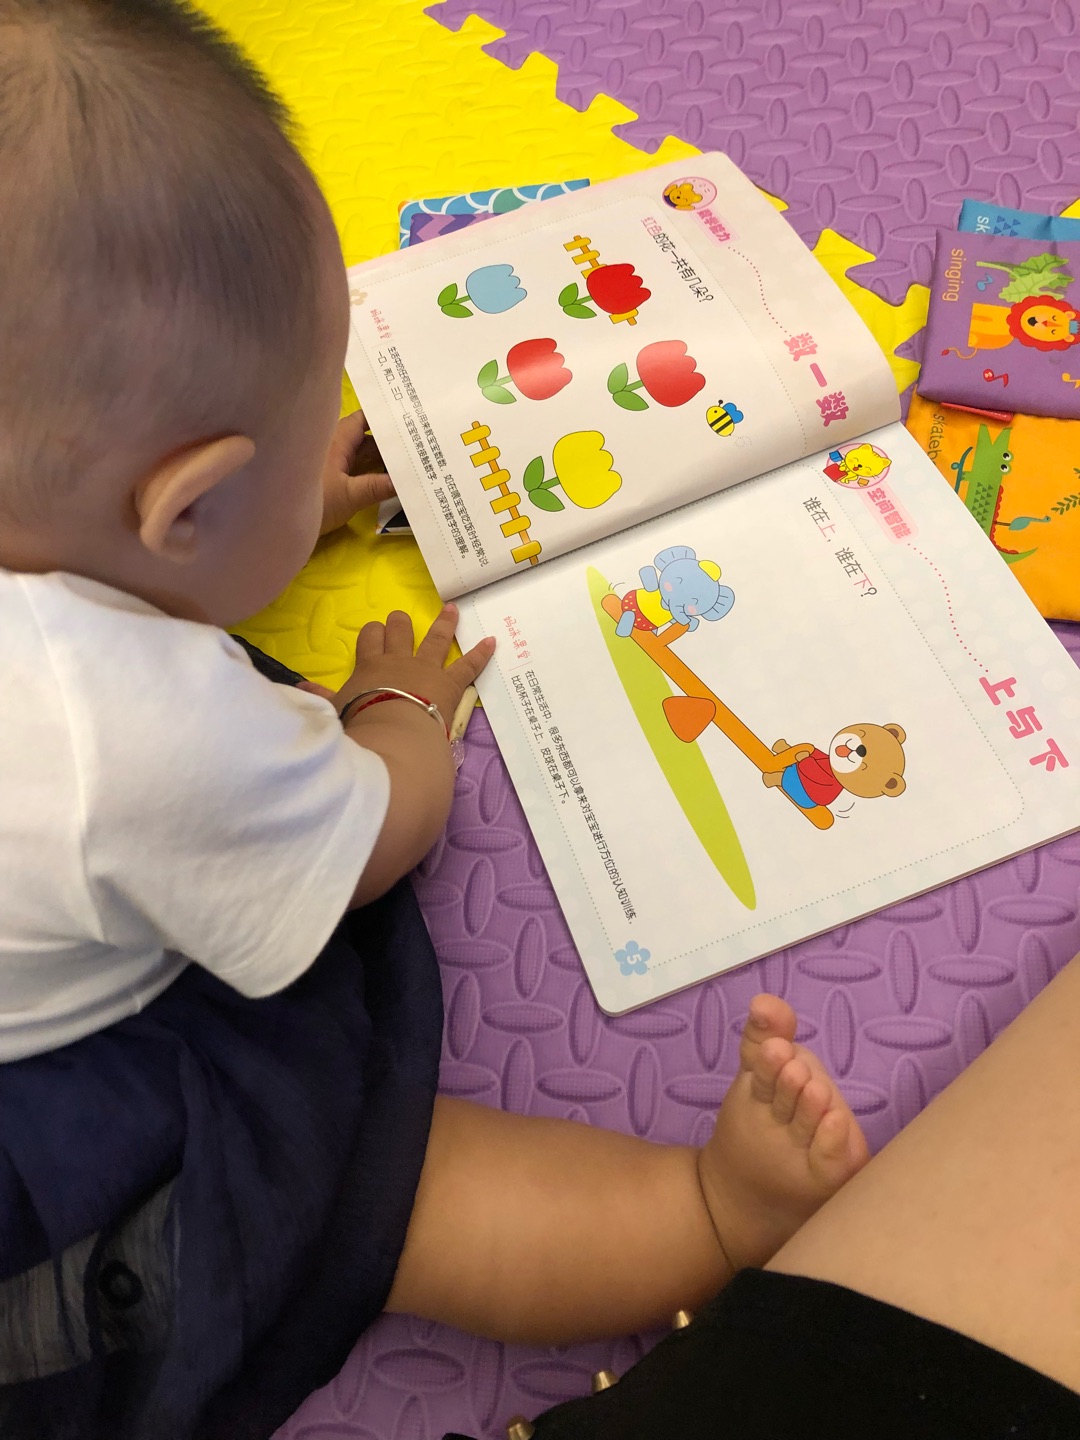 哈哈哈 超级好 宝宝喜欢看 背影好像真的就是那么回事在认真看书 希望以后是学霸